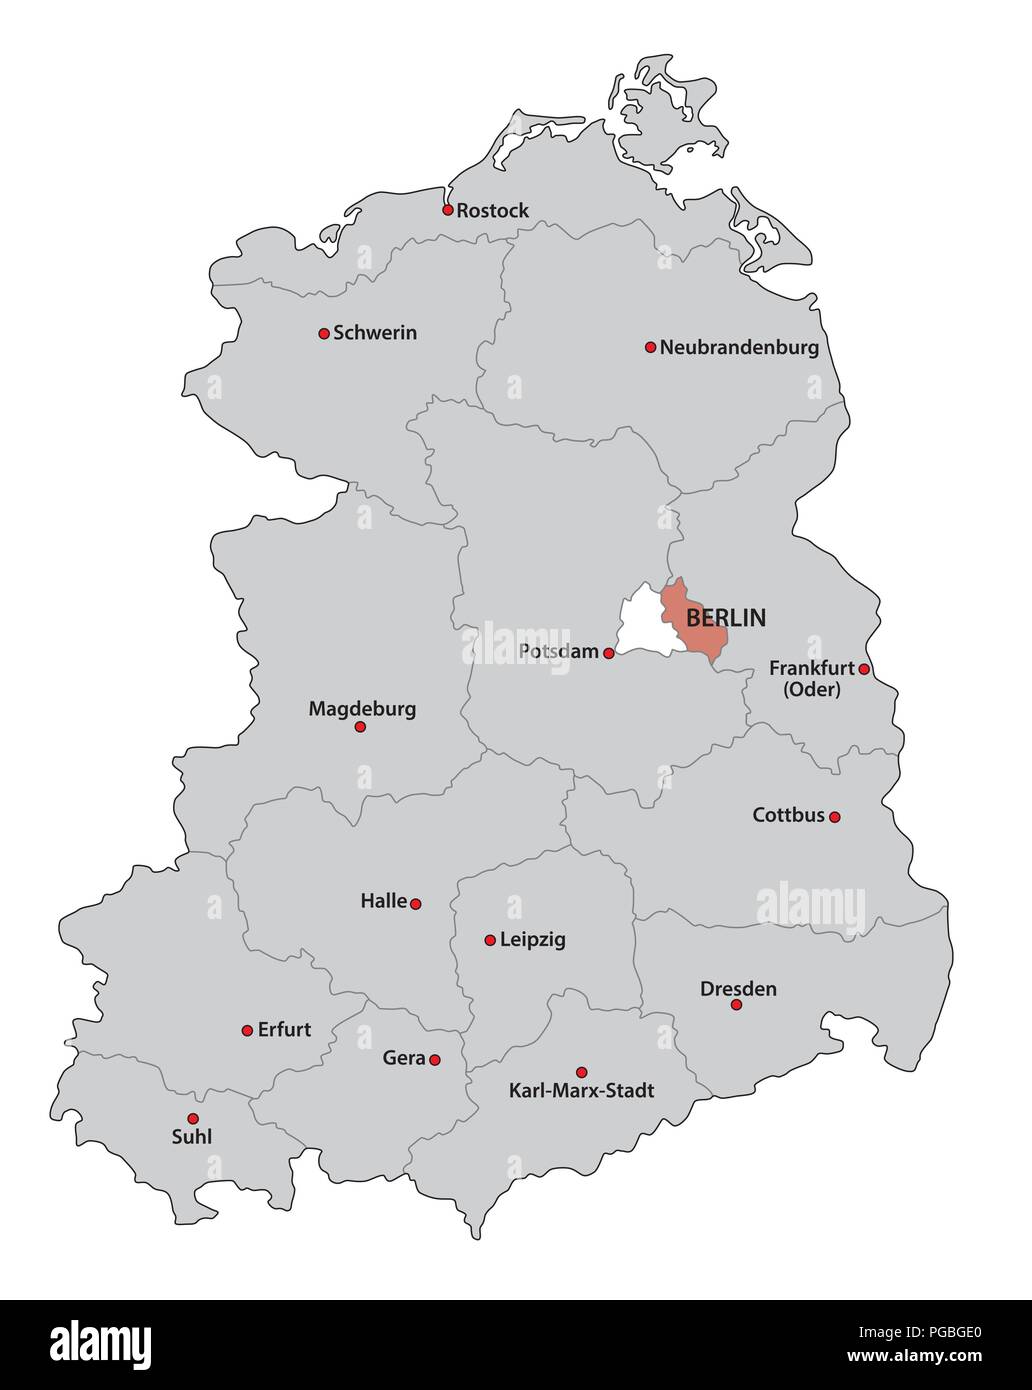 Verwaltungs- und politisch-administrative Karte der ehemaligen Deutschen Demokratischen Republik DDR.. Stock Vektor